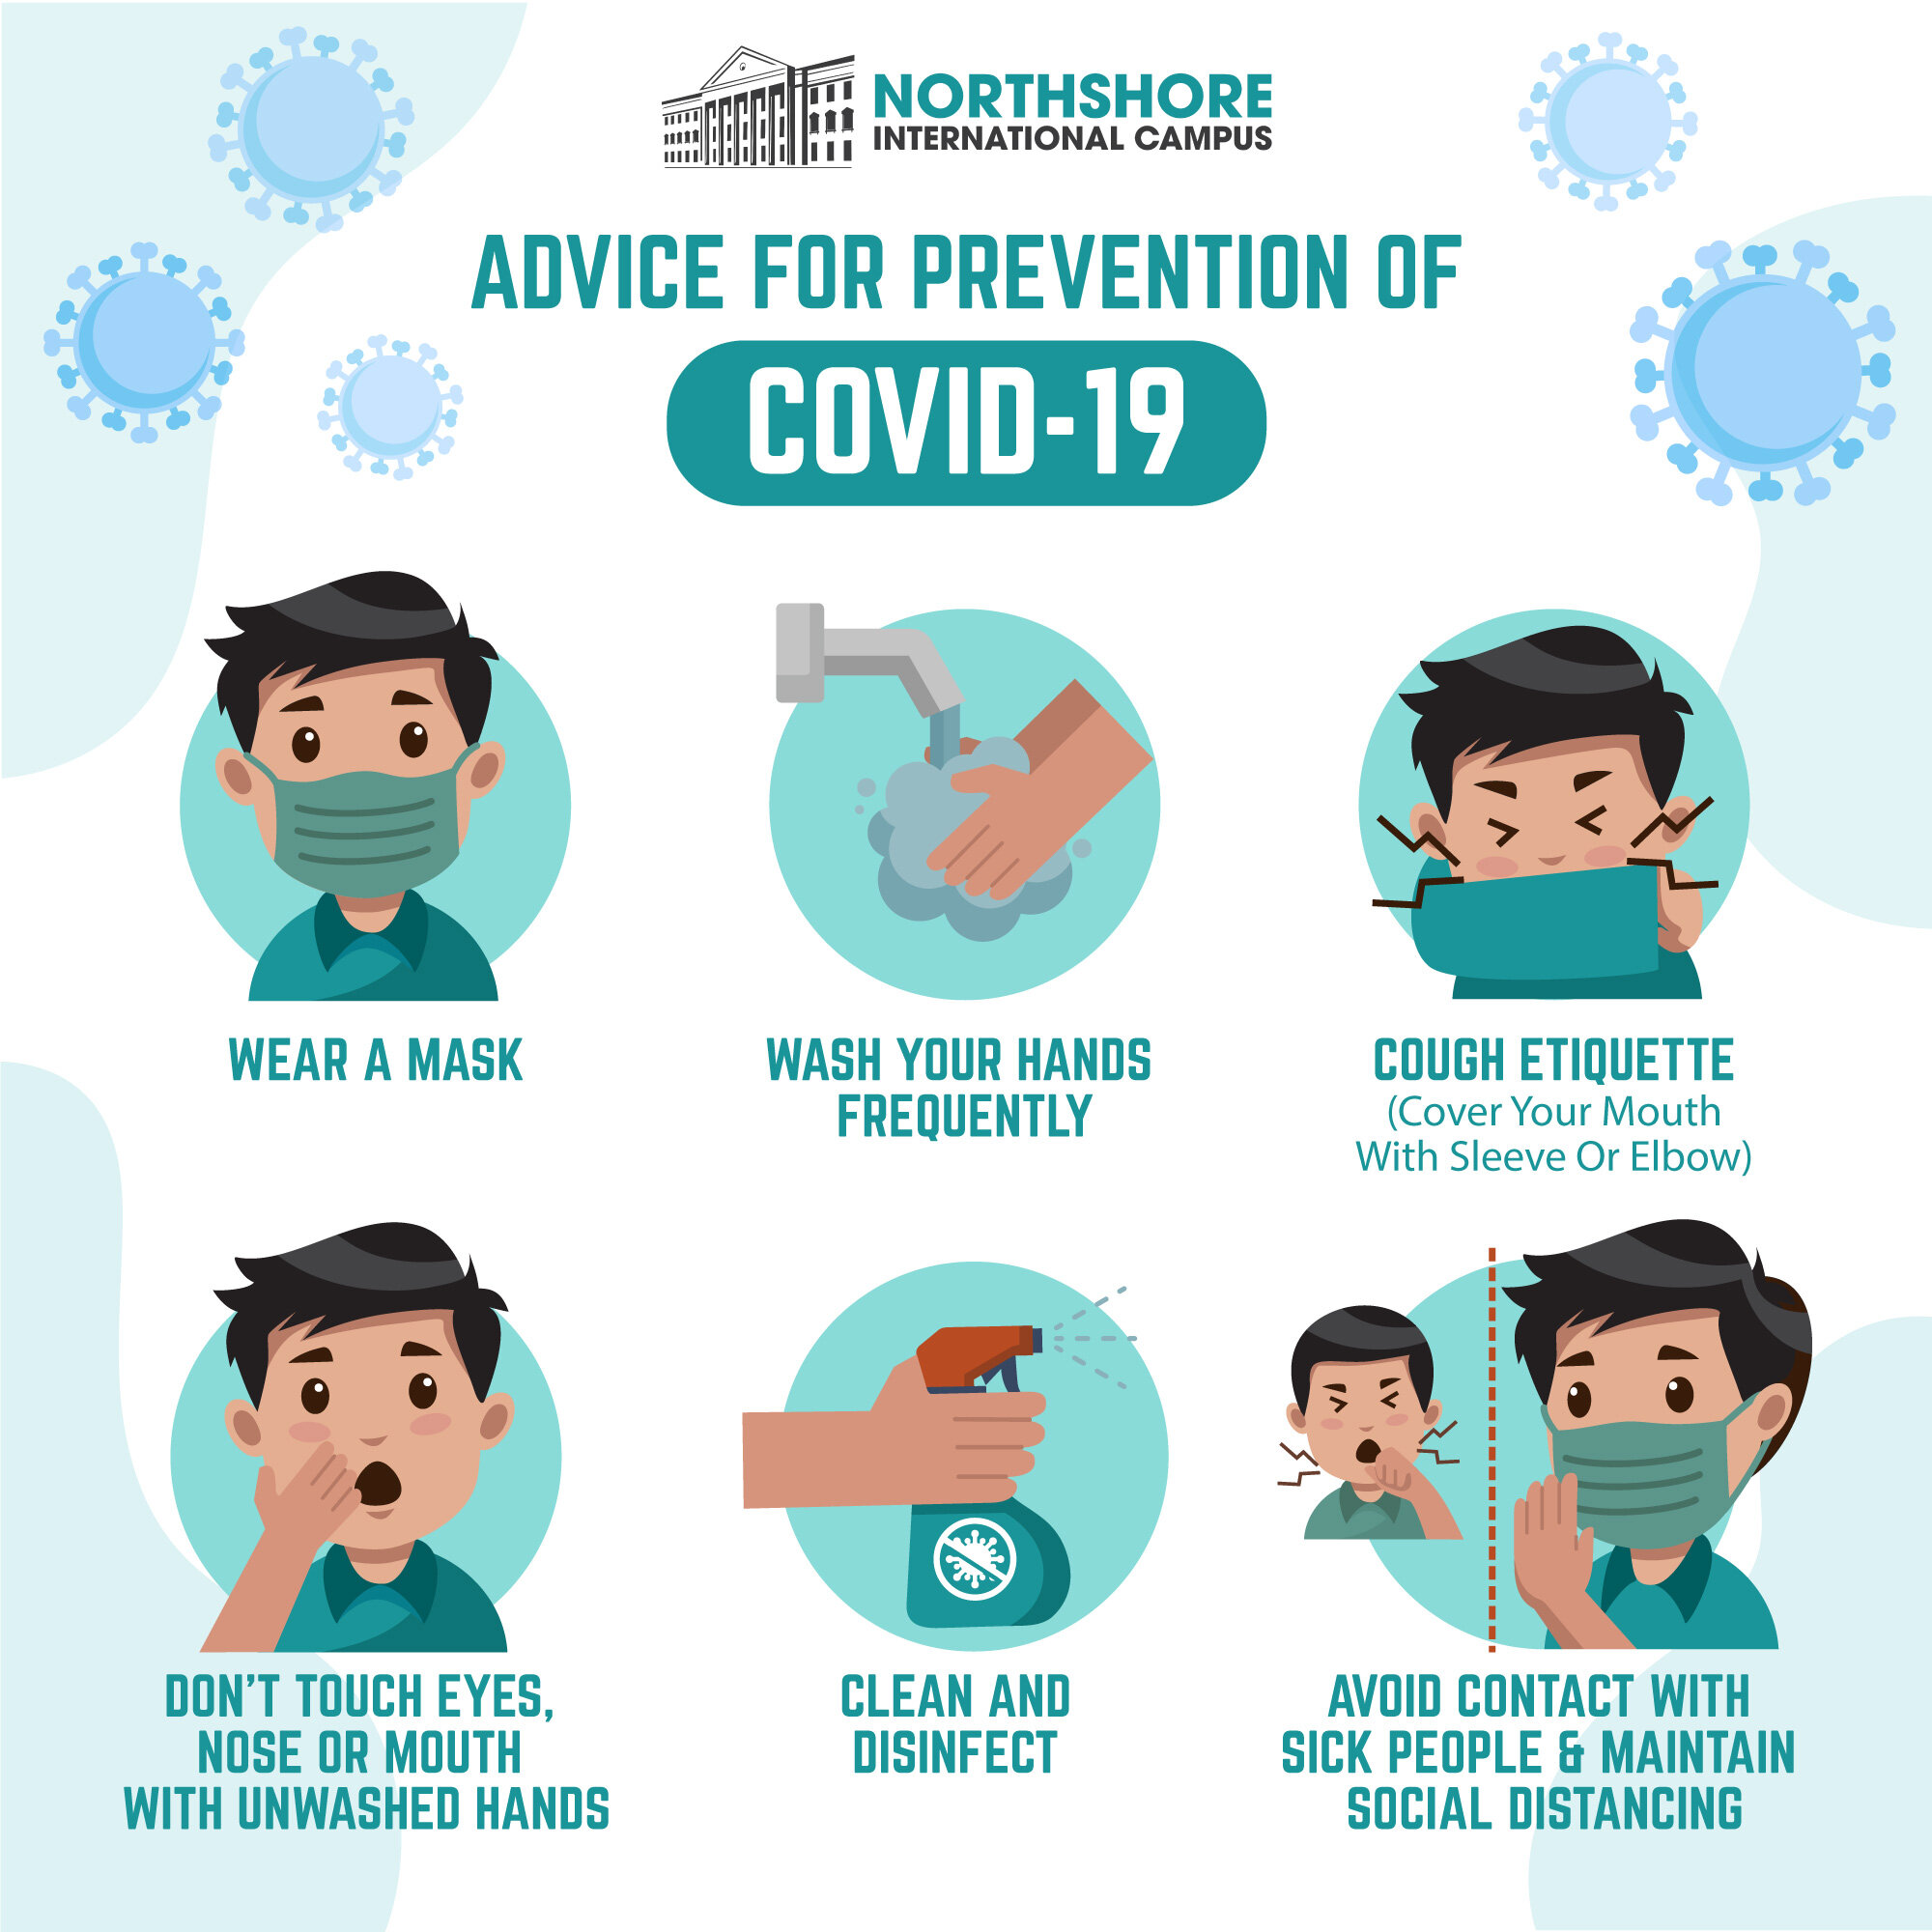 Covid-19 prevention